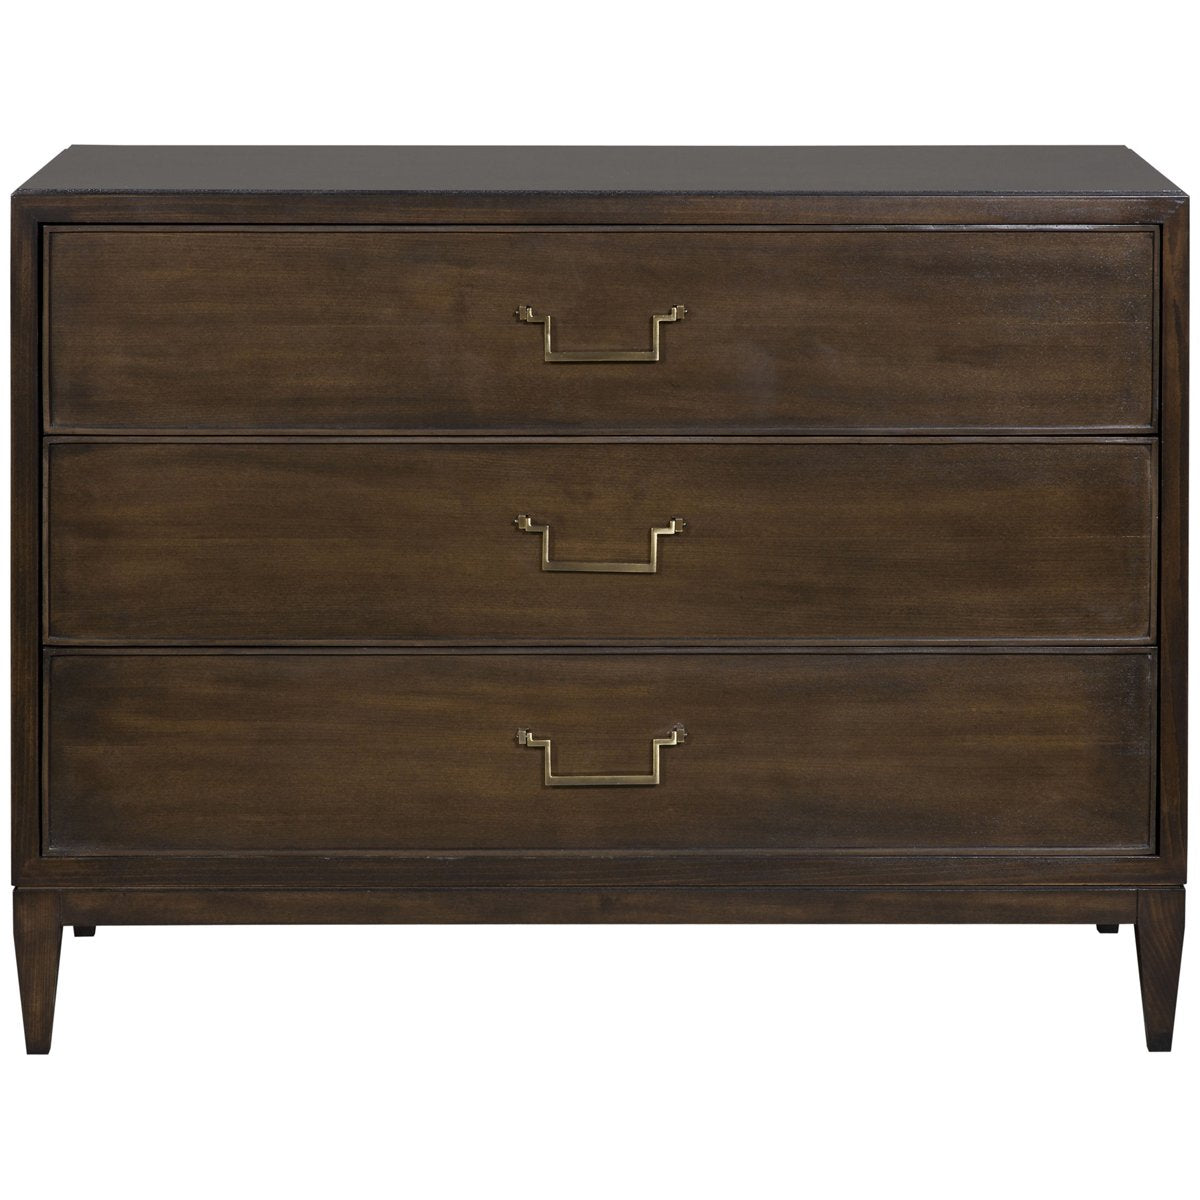 Vanguard Furniture Prosser Drawer Chest - Amarone